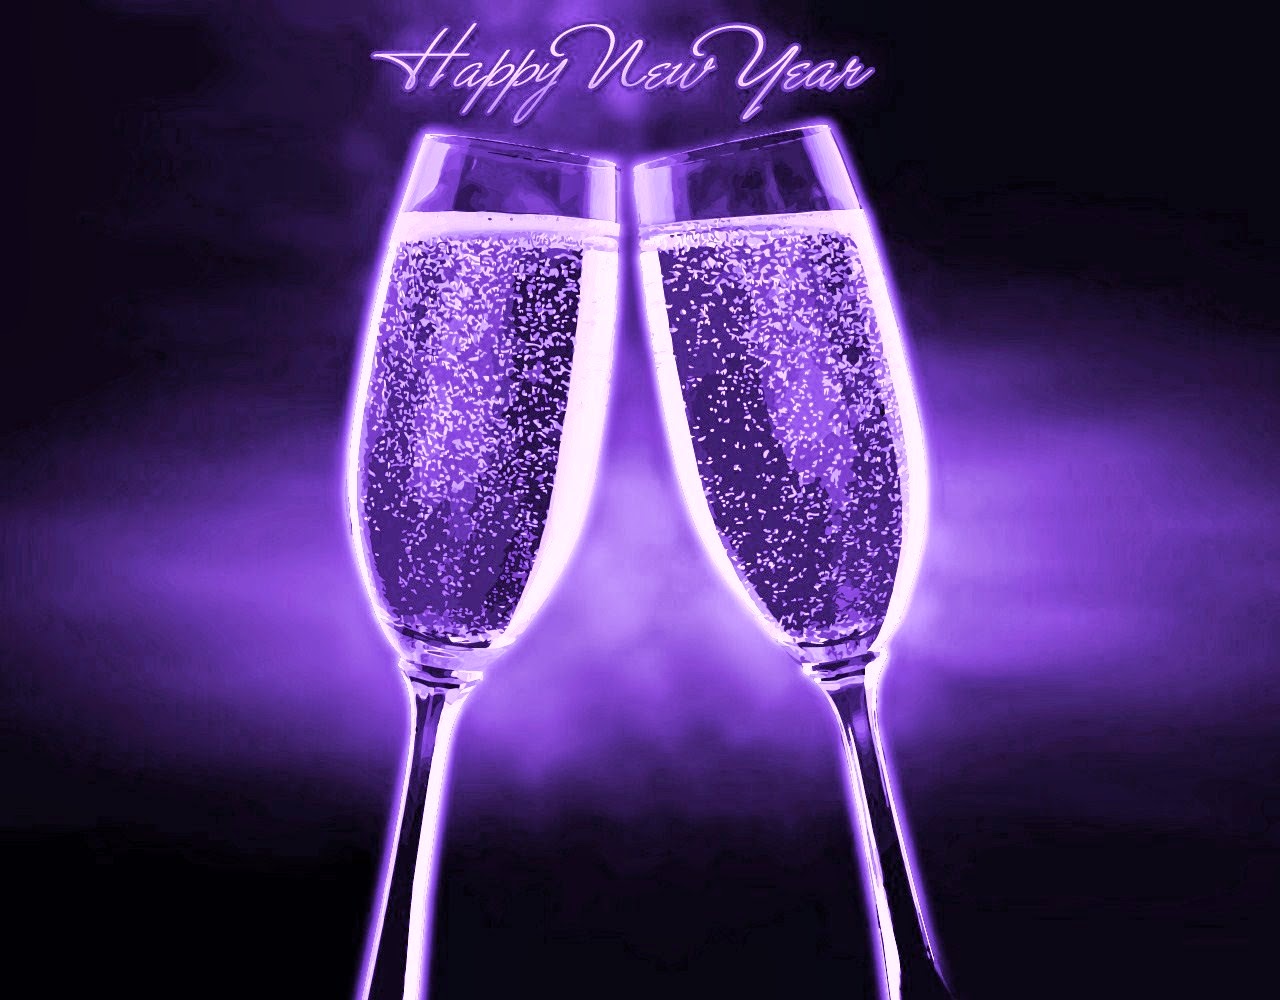 HAPPY NEW YEAR 2015, new year, 2015, new year message, happy new year messages, new year quotes, new year text quotes, New year image, new year logo, New year pictures